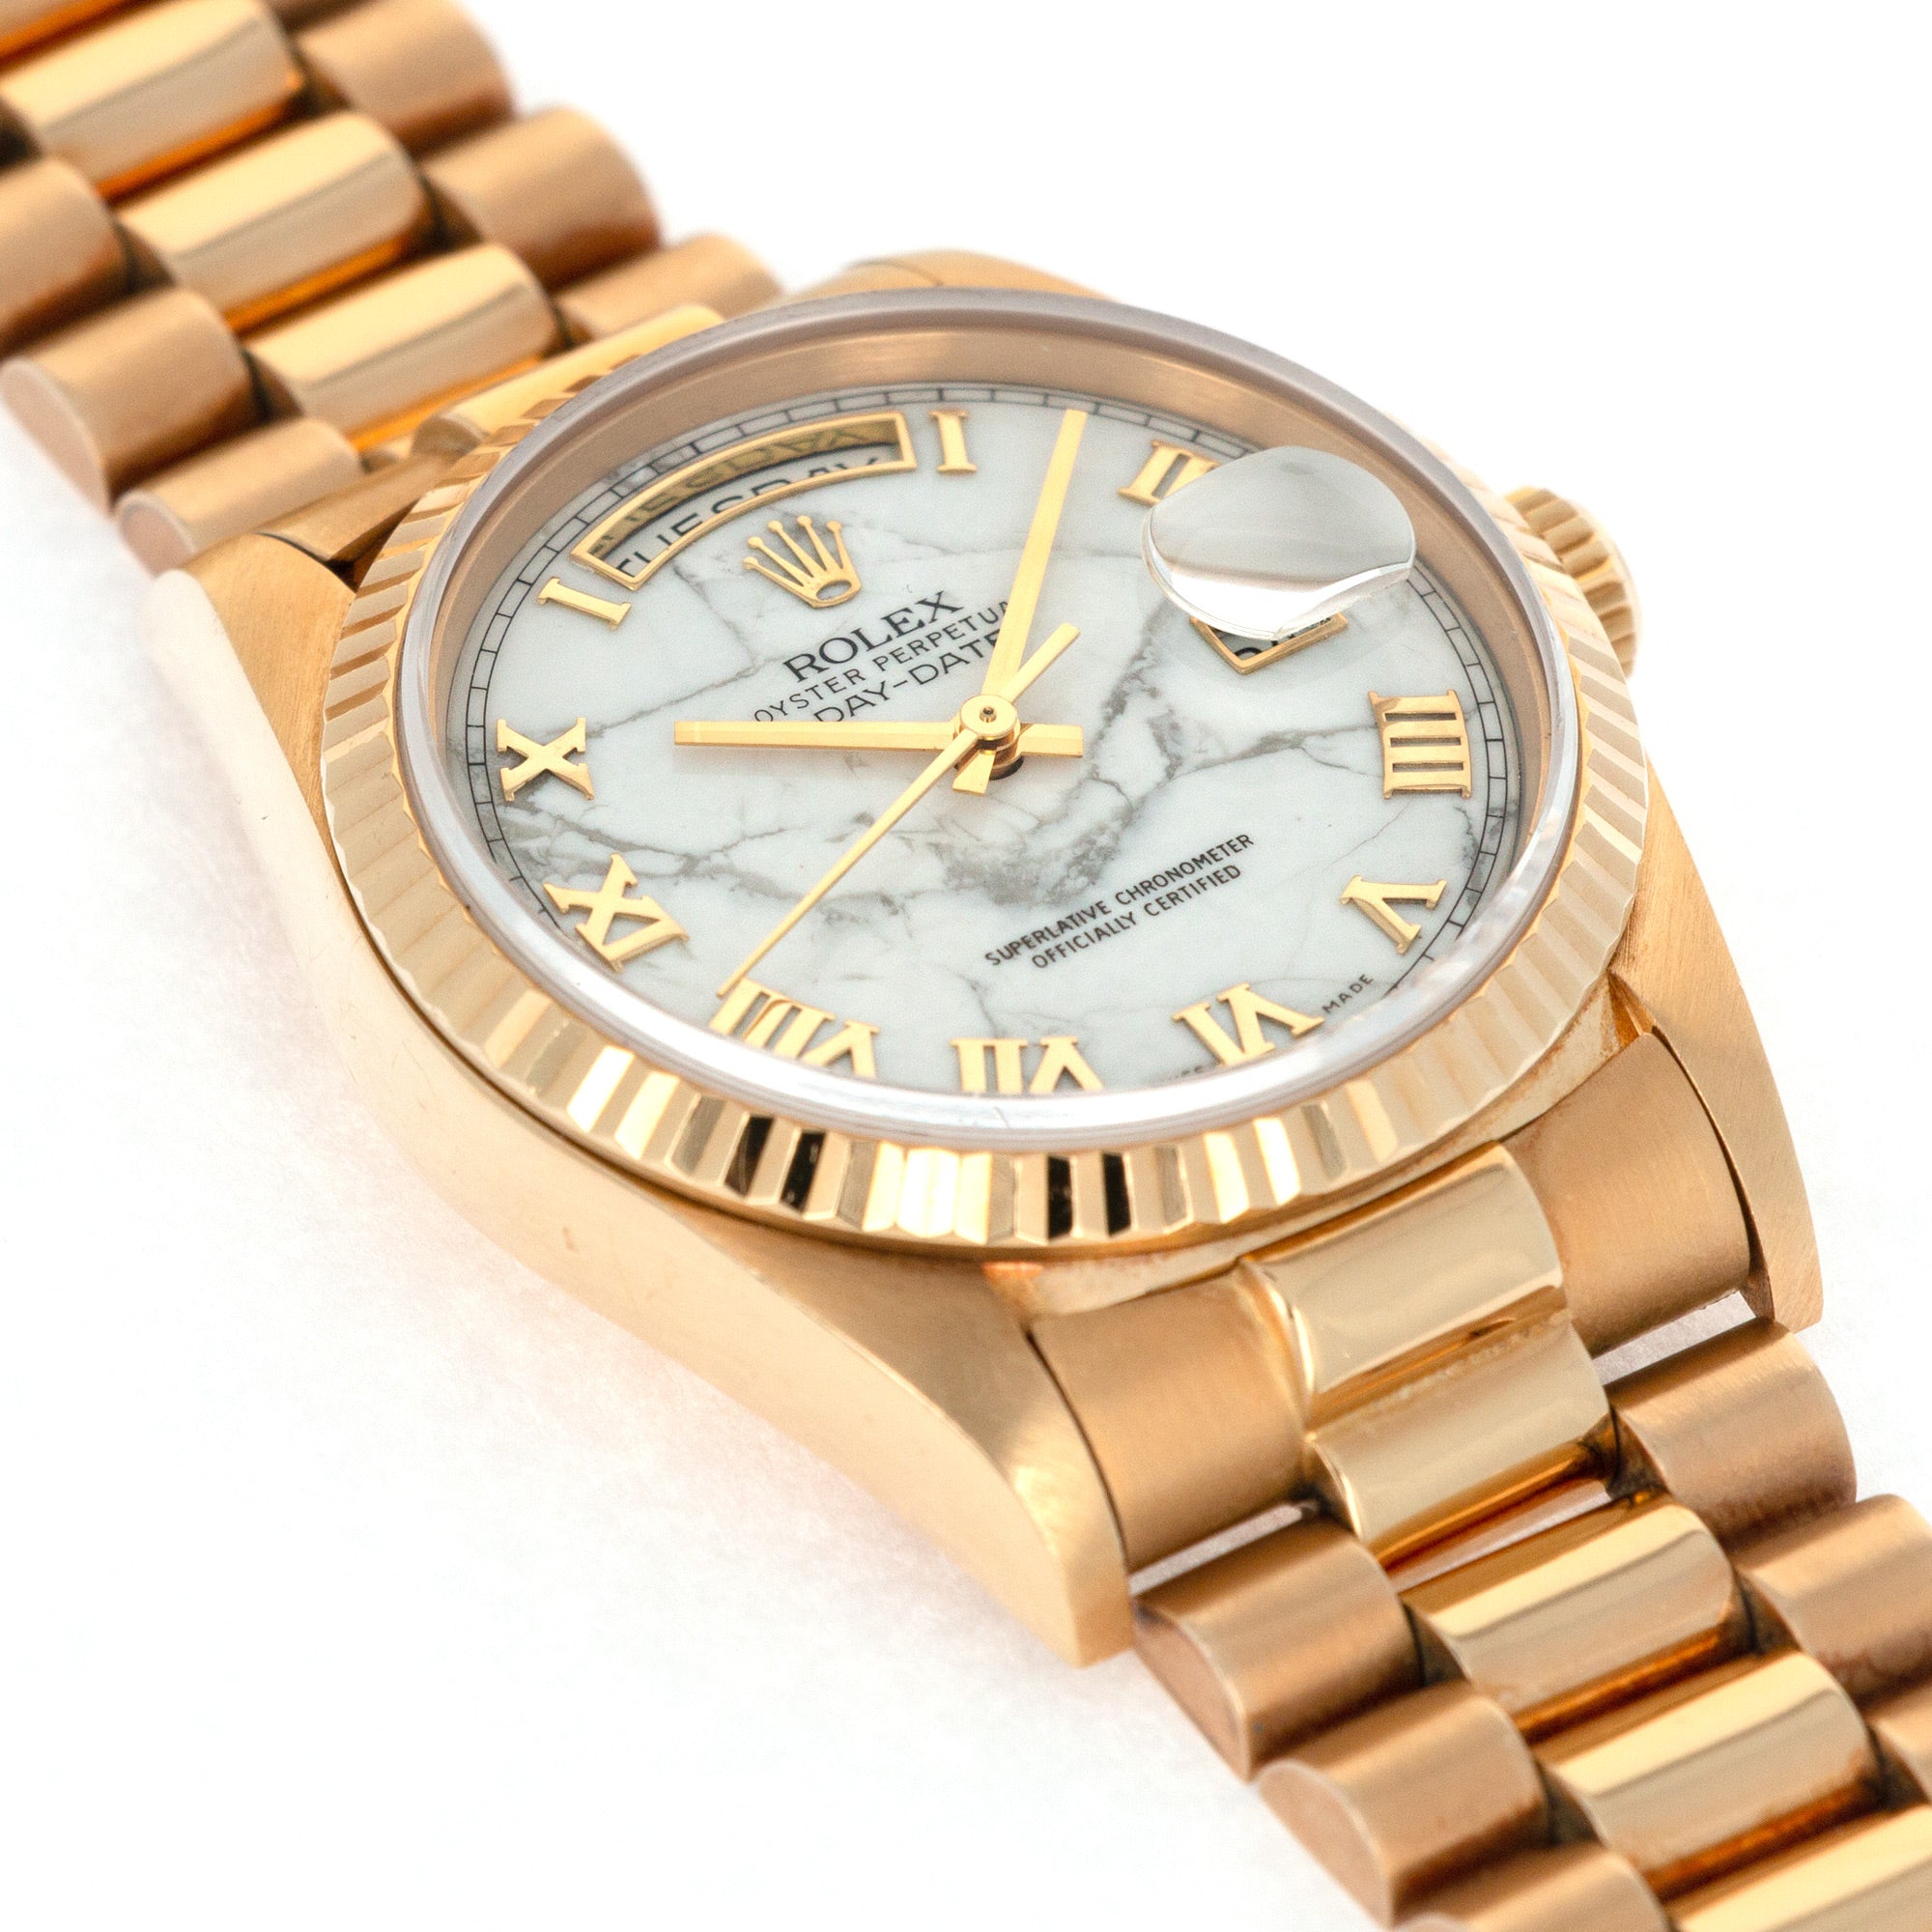 Rolex - Rolex Yellow Gold Day-Date Howlite Watch Ref. 18238 - The Keystone Watches